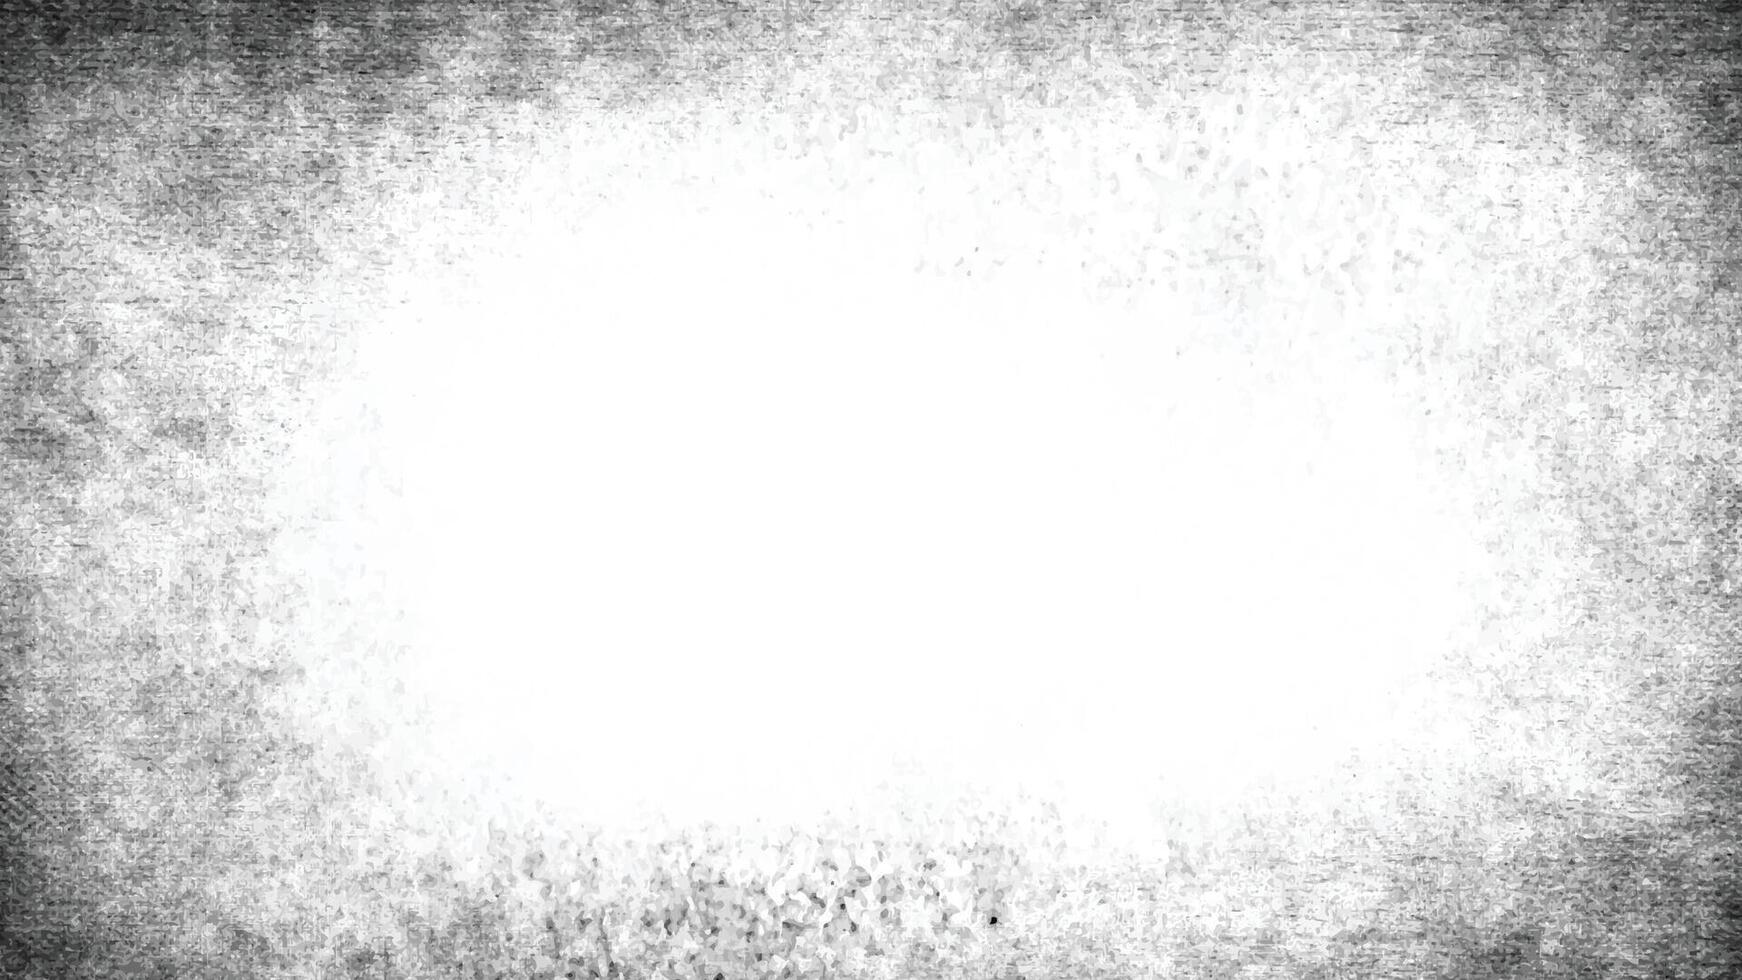 resumen templado texturizado efecto. ilustración de negro aislado en blanco. vector